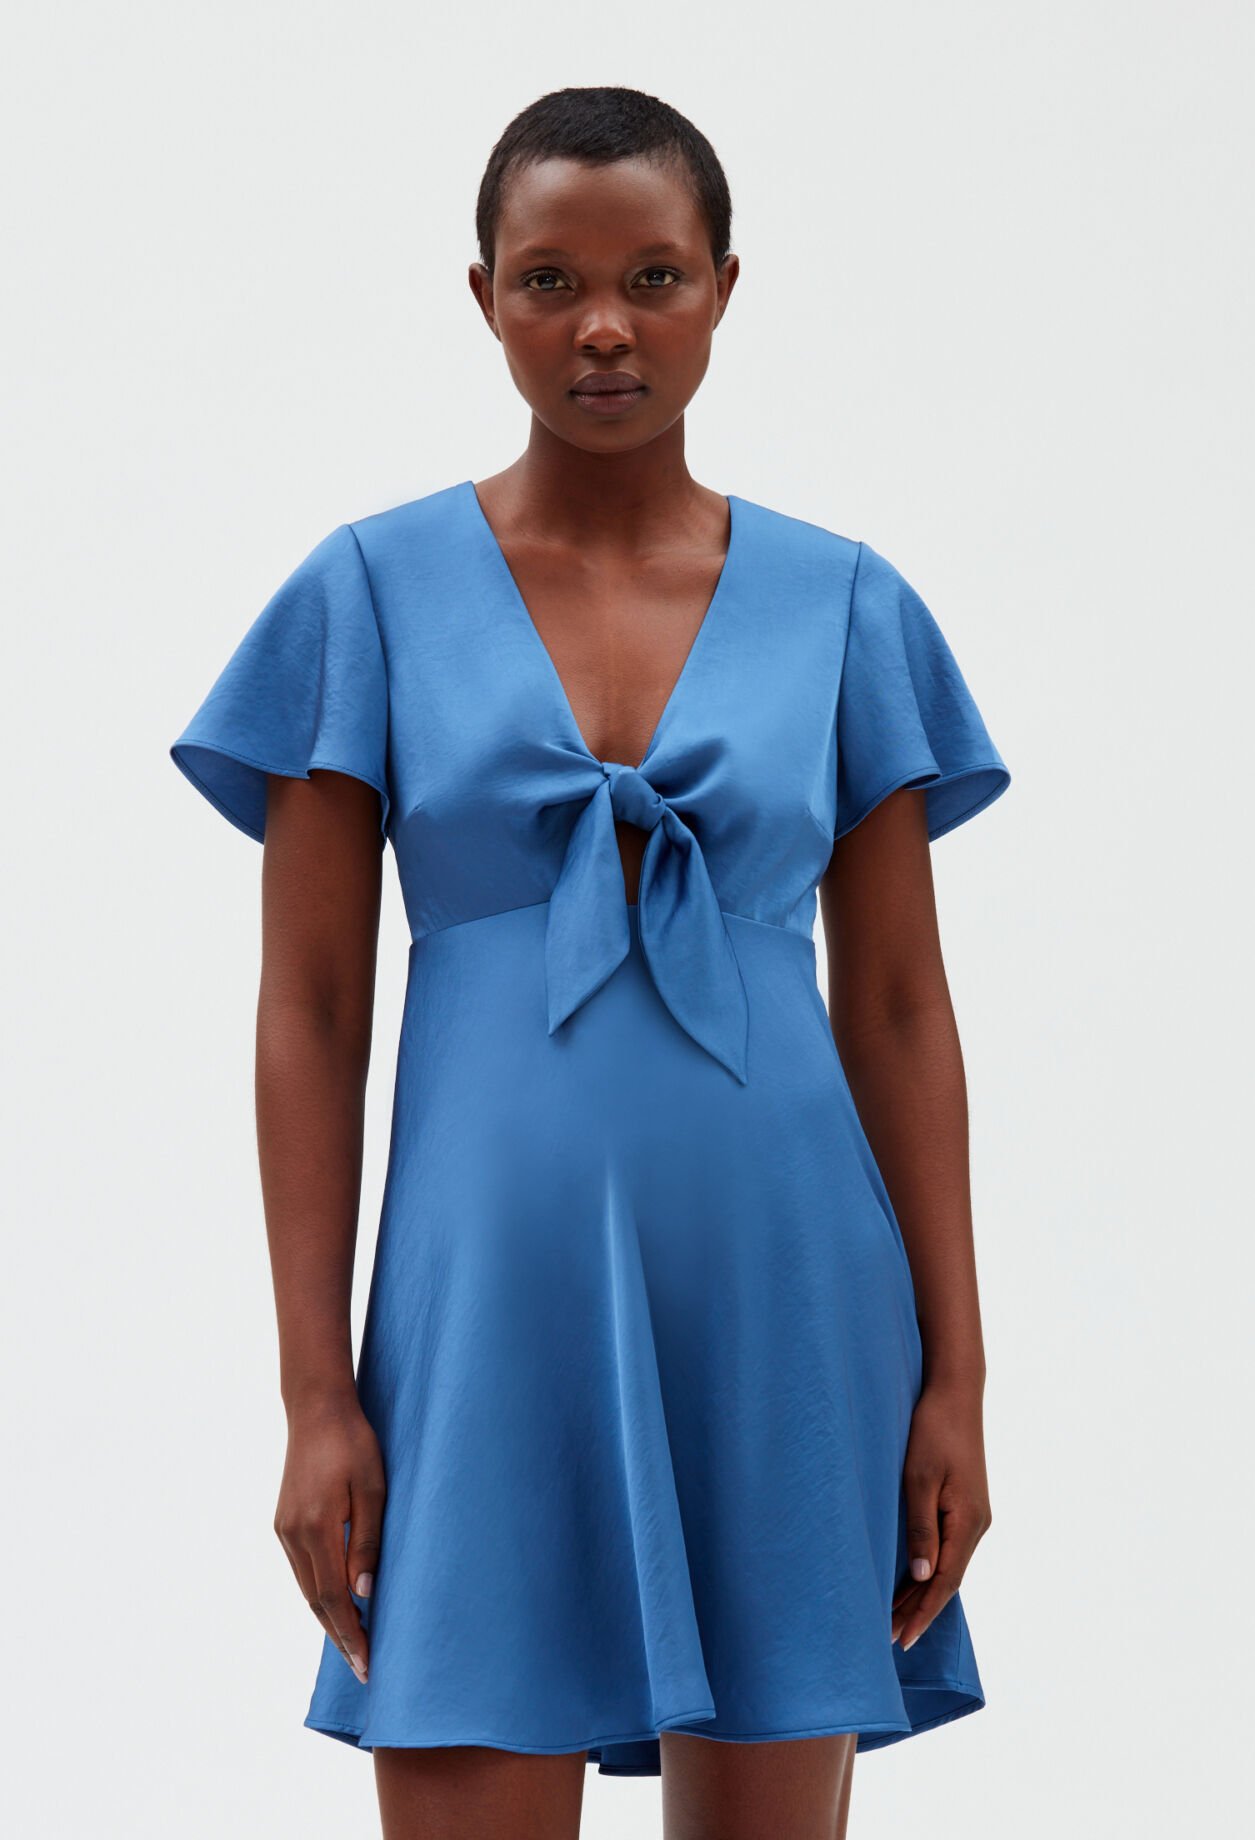 Short flowing blue dress